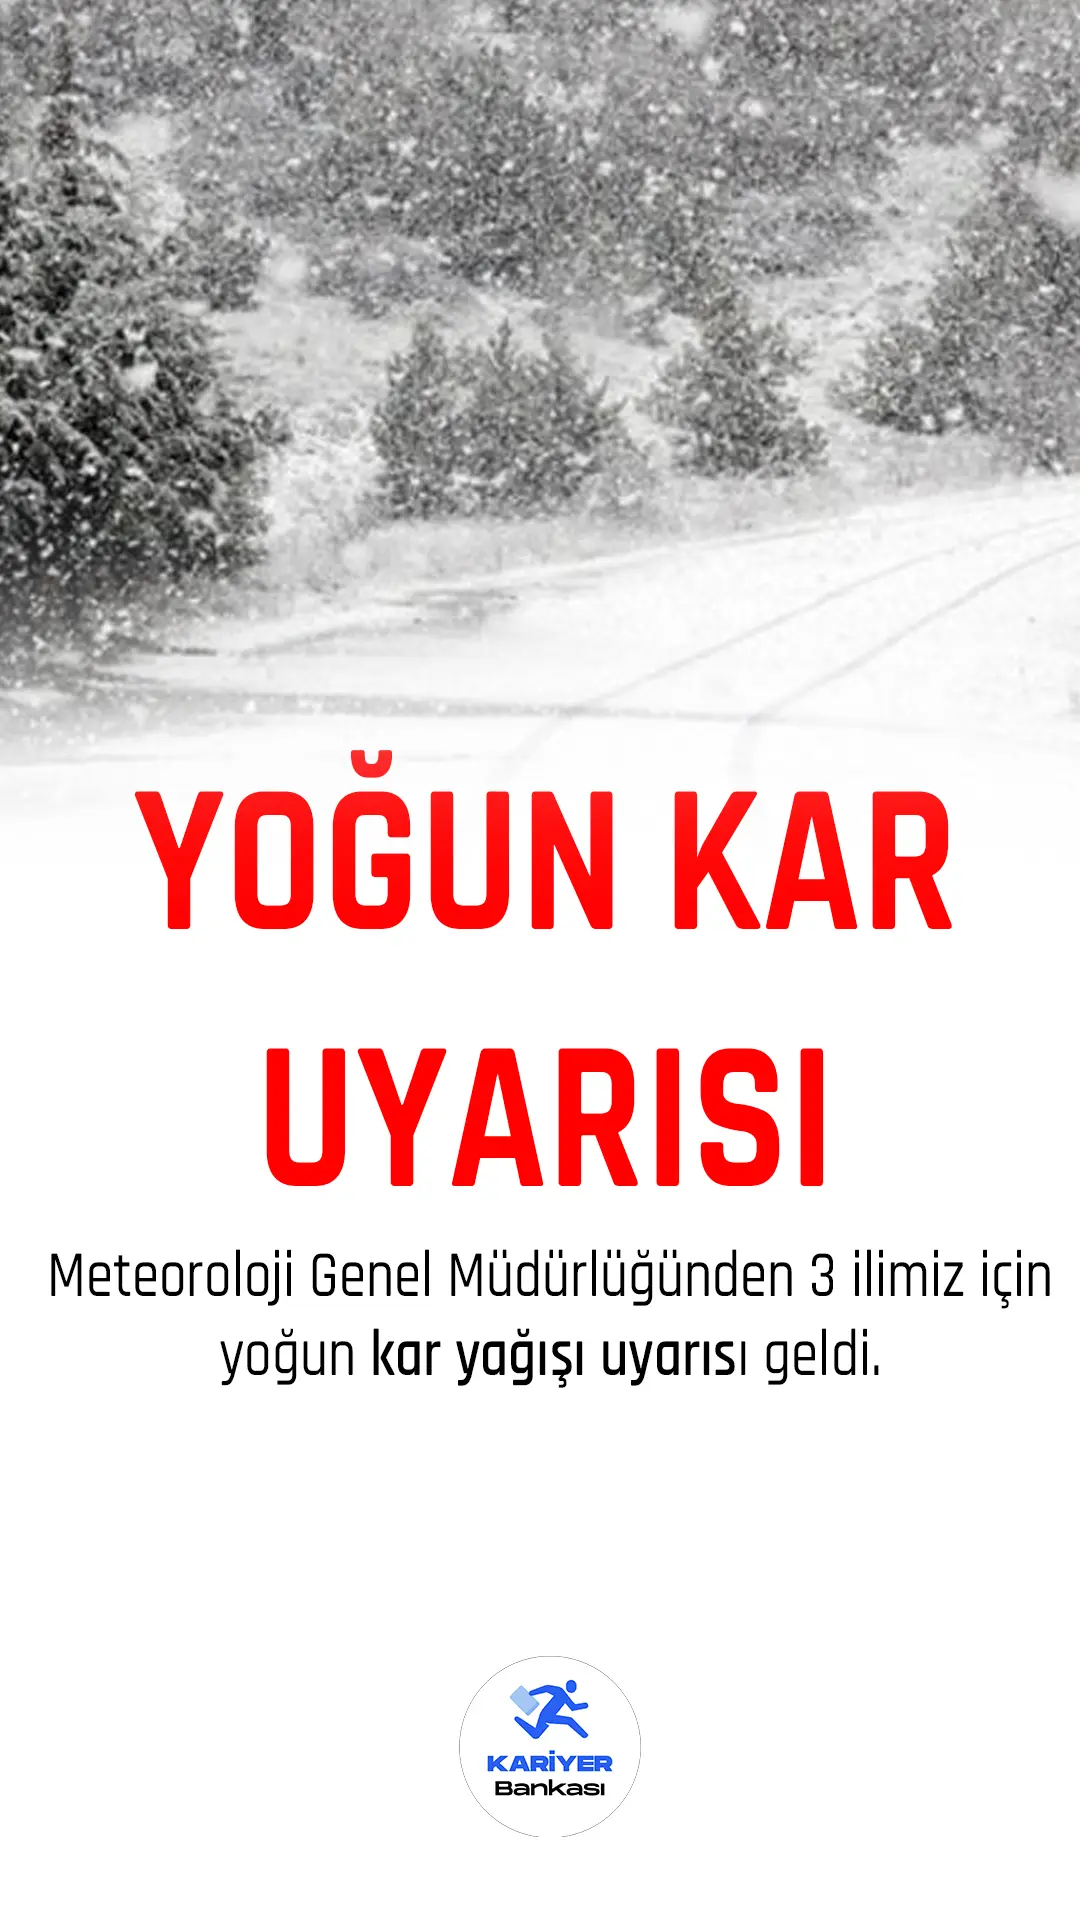 Meteoroloji Genel Müdürlüğünden kar yağışı uyarısı geldi.